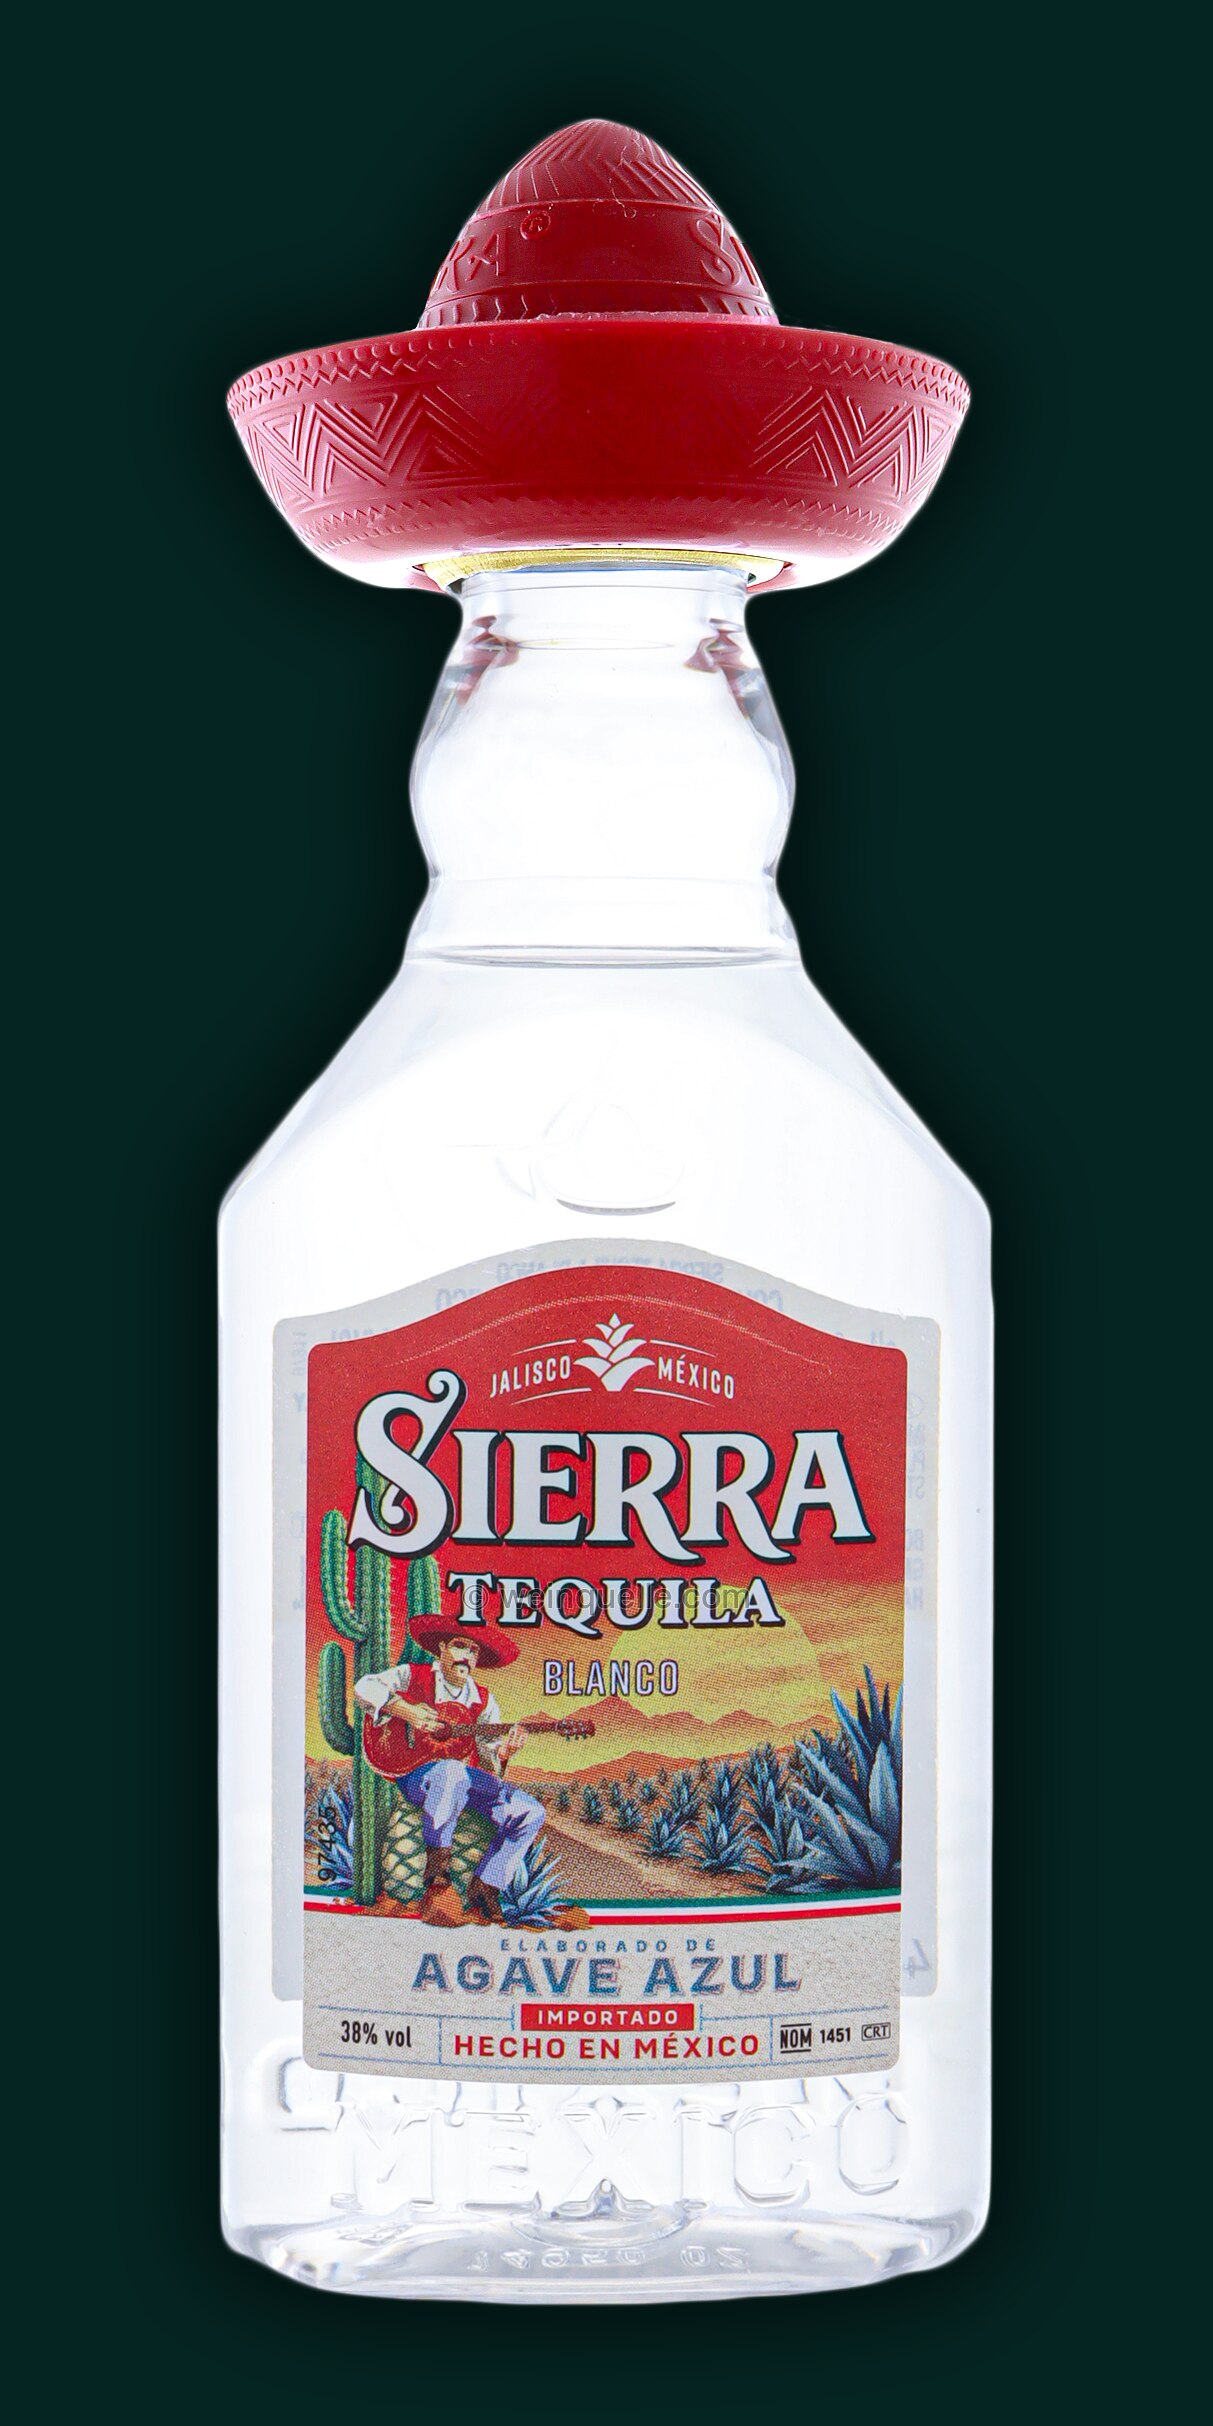 Sierra Silver PET Weinquelle Tequila Lühmann € 2,30 Liter, 0,05 